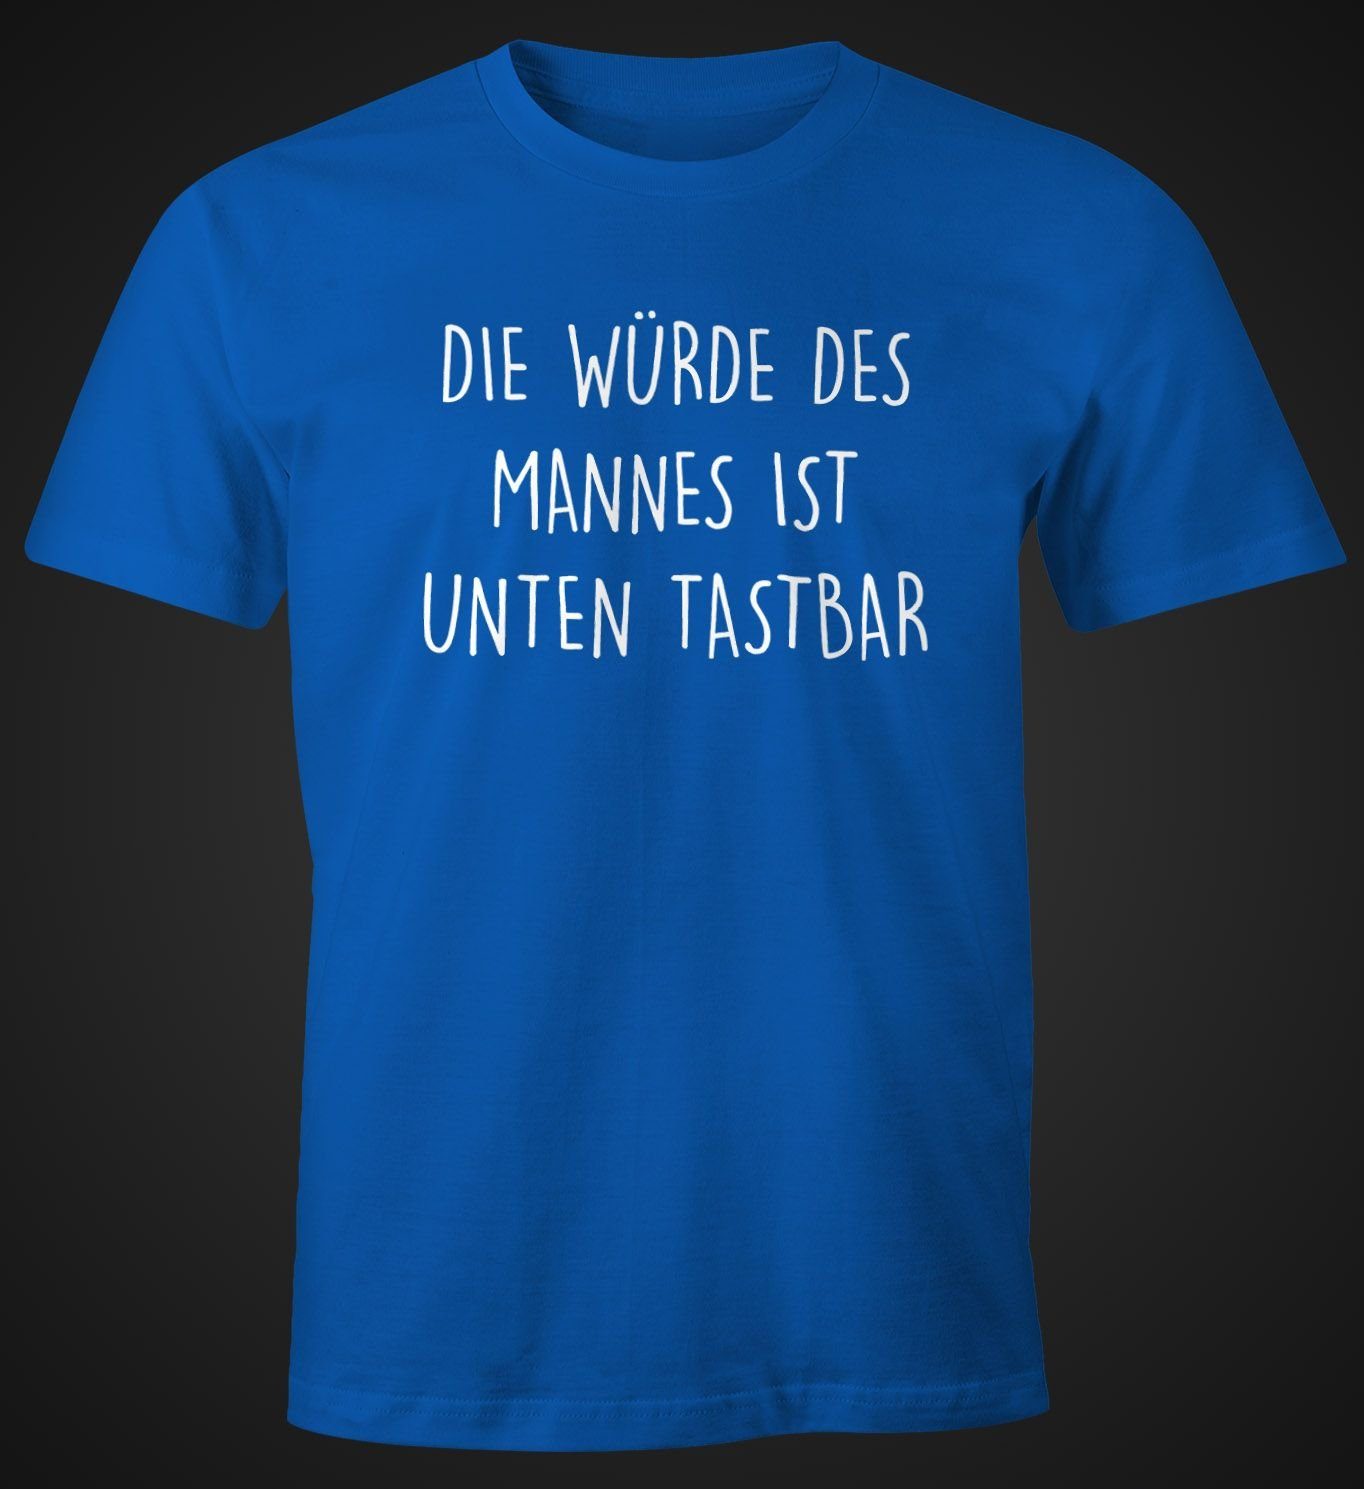 tastbar Herren Moonworks® blau Spruch Lustiges Die Mannes Print T-Shirt mit Würde mit Print-Shirt ist Fun-Shirt MoonWorks unten des